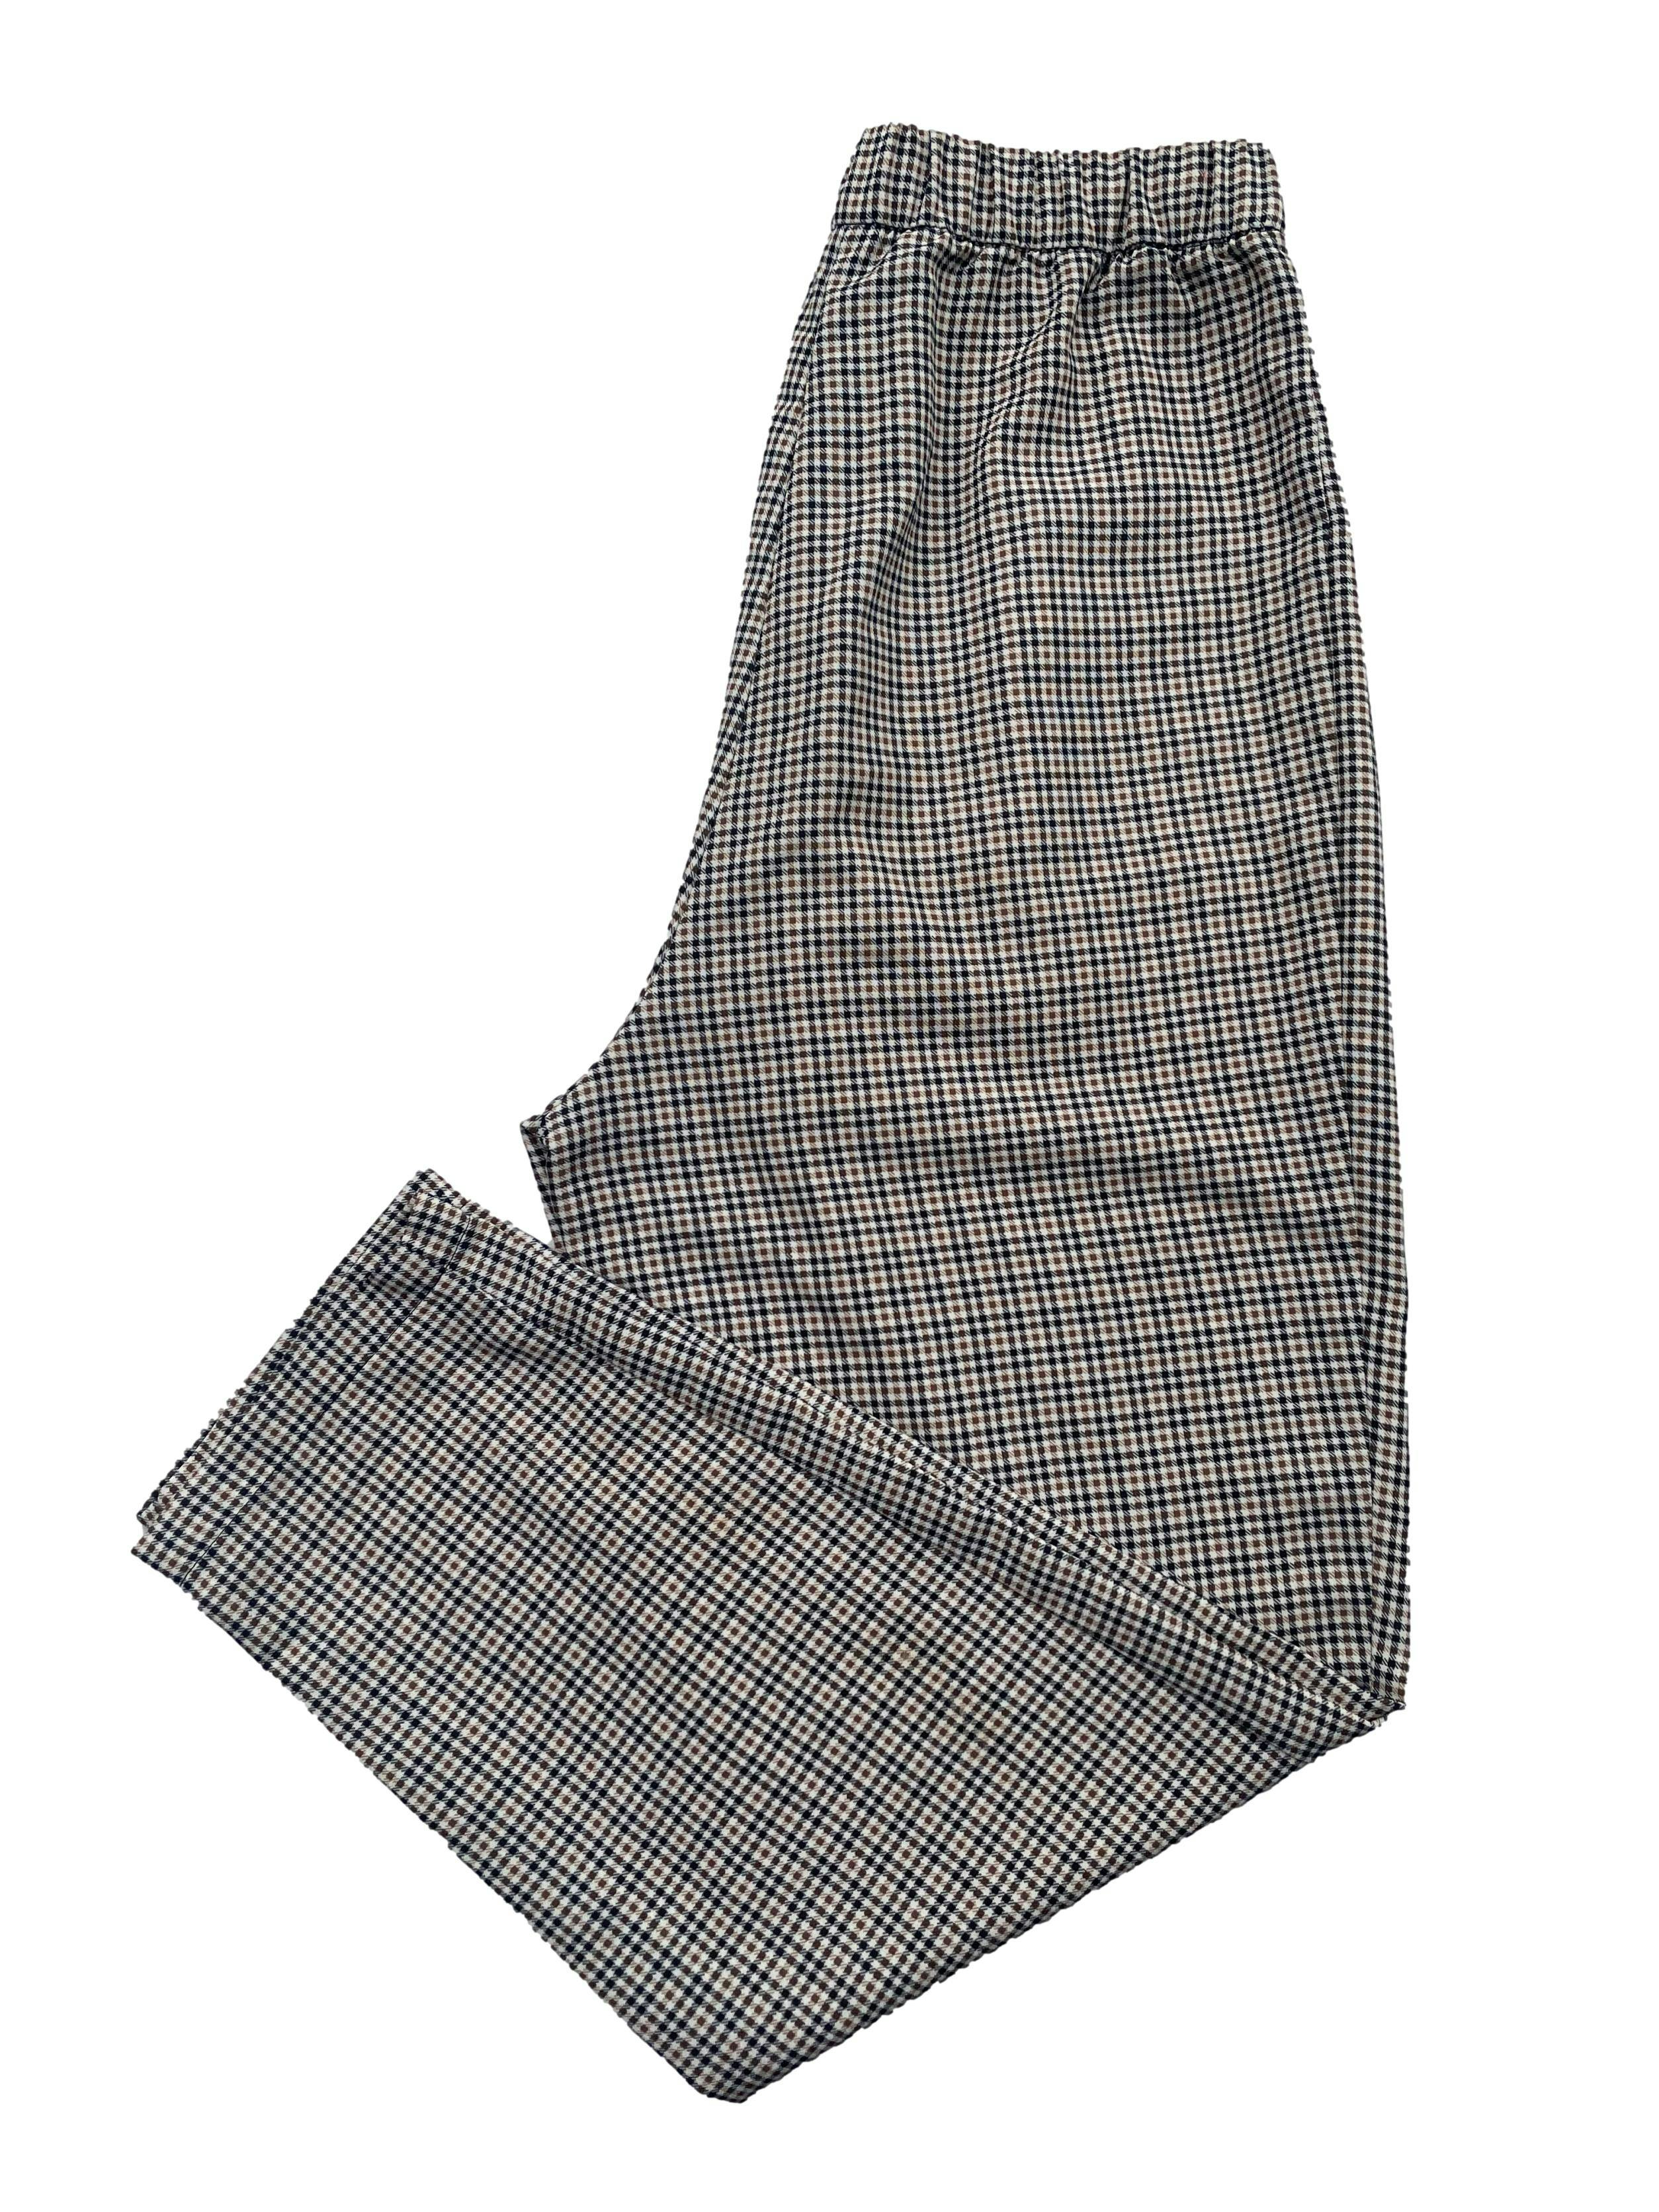 Pantalón H&M tiro alto, de cuadritos, con cierre y botón delantero. Cintura: 68cm, Largo: 95cm.